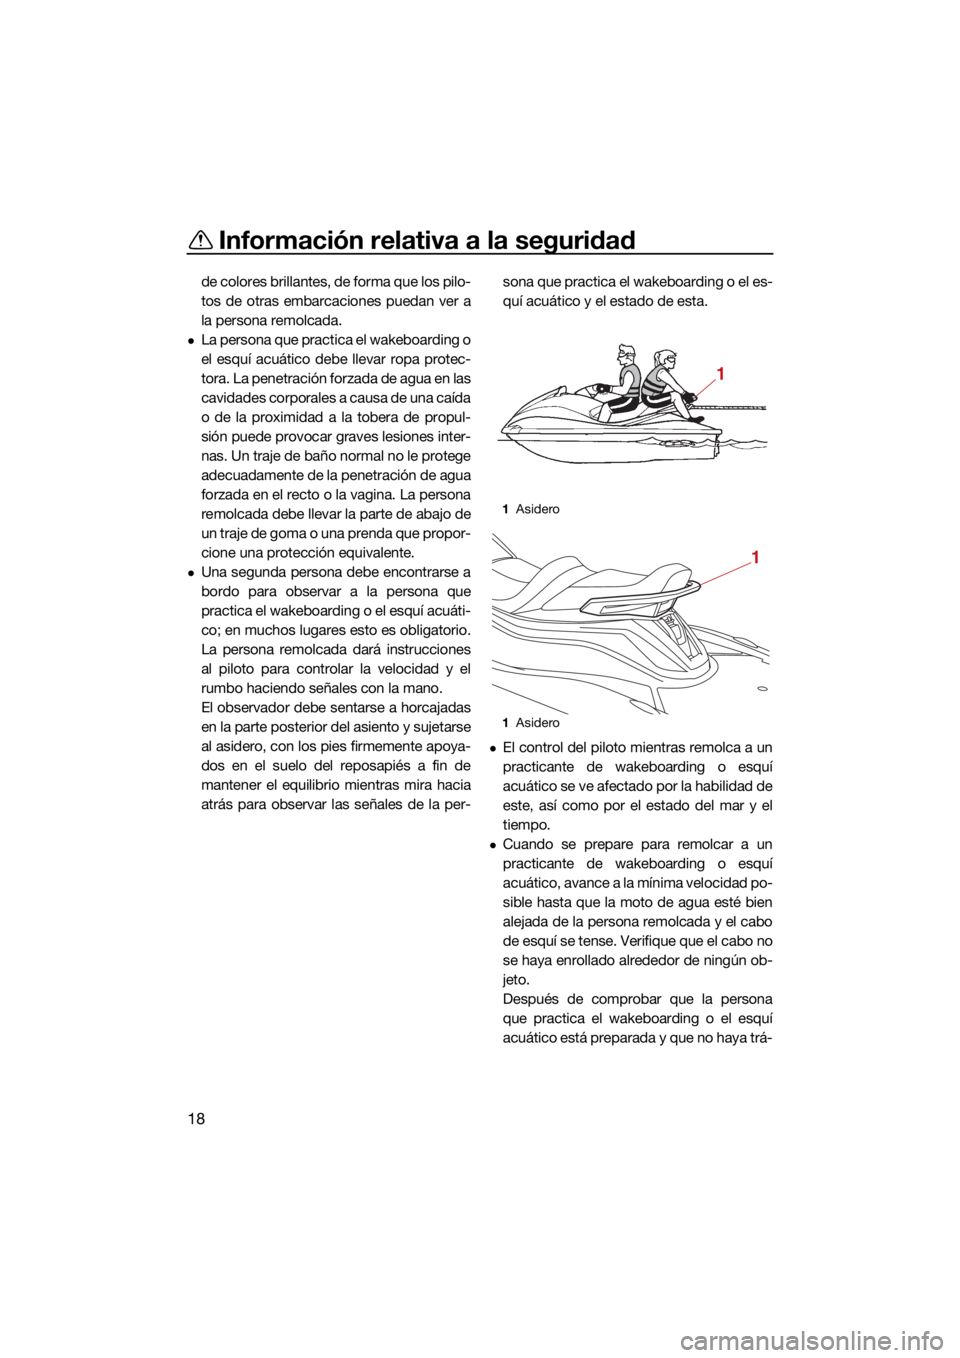 YAMAHA VX CRUISER 2021  Manuale de Empleo (in Spanish) Información relativa a la seguridad
18
de colores brillantes, de forma que los pilo-
tos de otras embarcaciones puedan ver a
la persona remolcada.
La persona que practica el wakeboarding o
el esqu